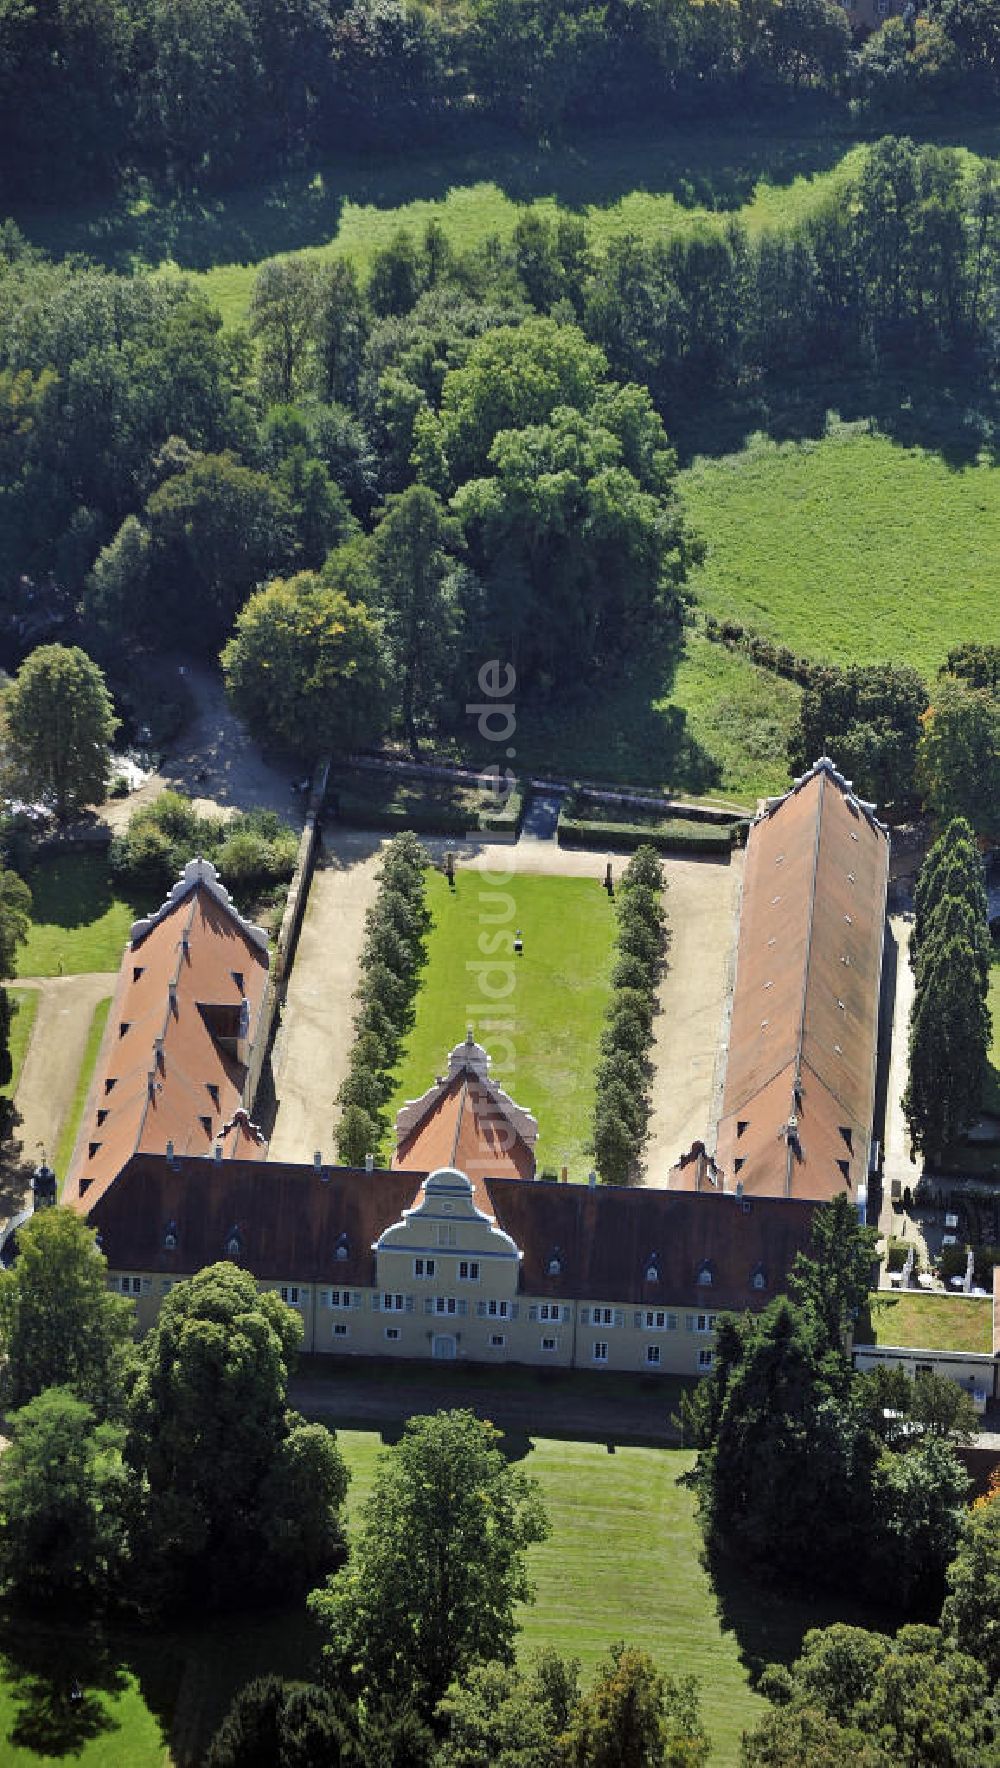 Luftaufnahme Darmstadt - Jagdschloss Kranichstein